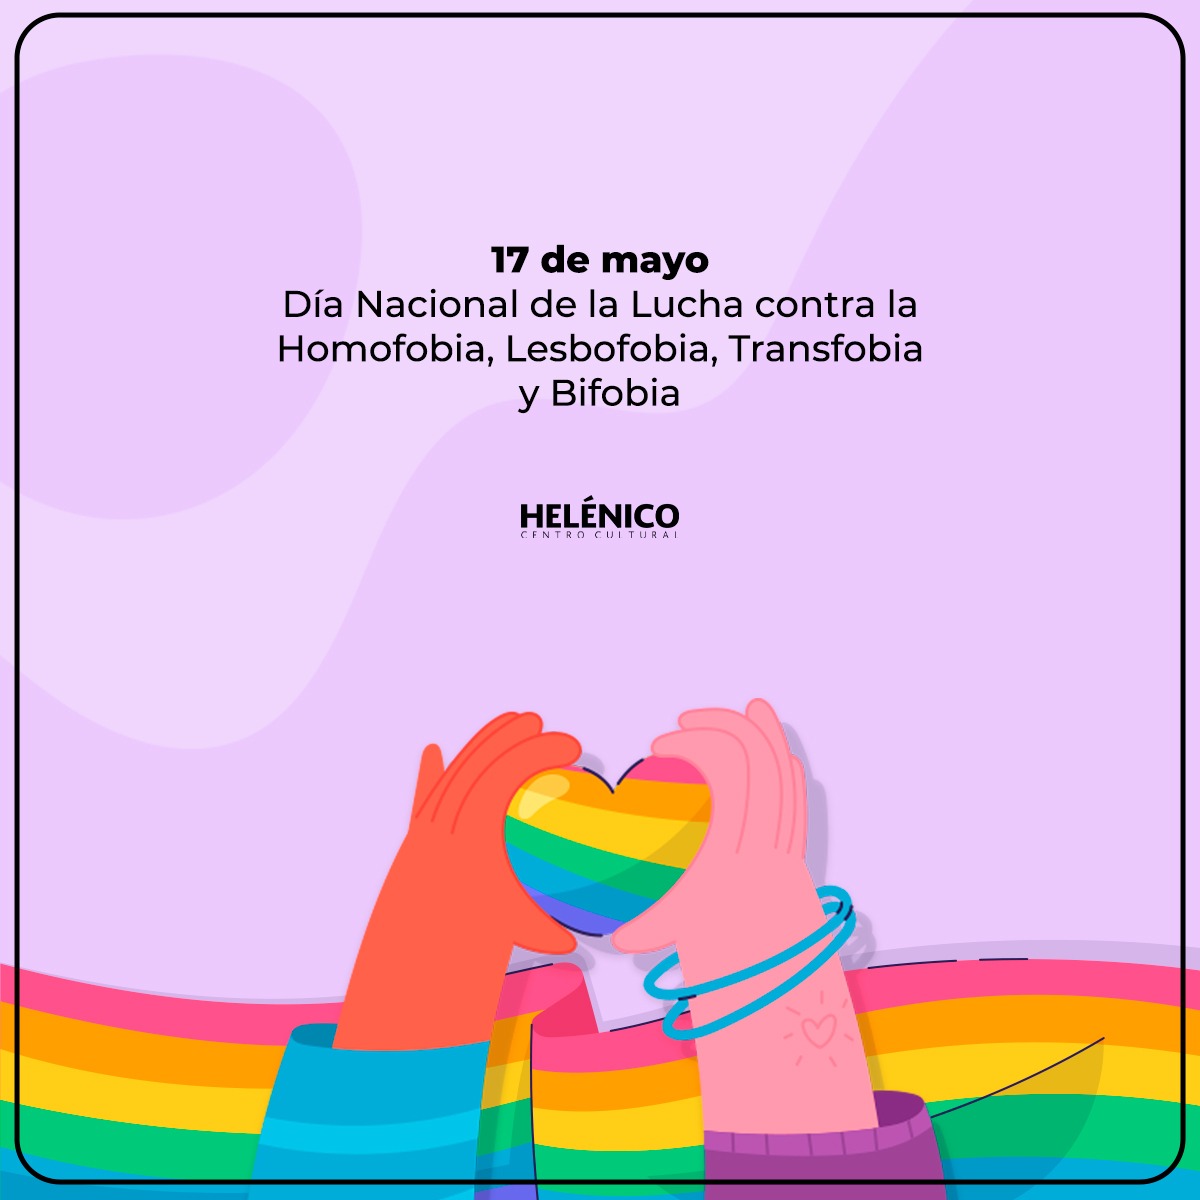 Hoy conmemoramos el Día Nacional de la Lucha contra la Homofobia, Lesbofobia, Transfobia y Bifobia; que los discursos se encaminen hacia un fin fraterno entre todas y todos. 🌈